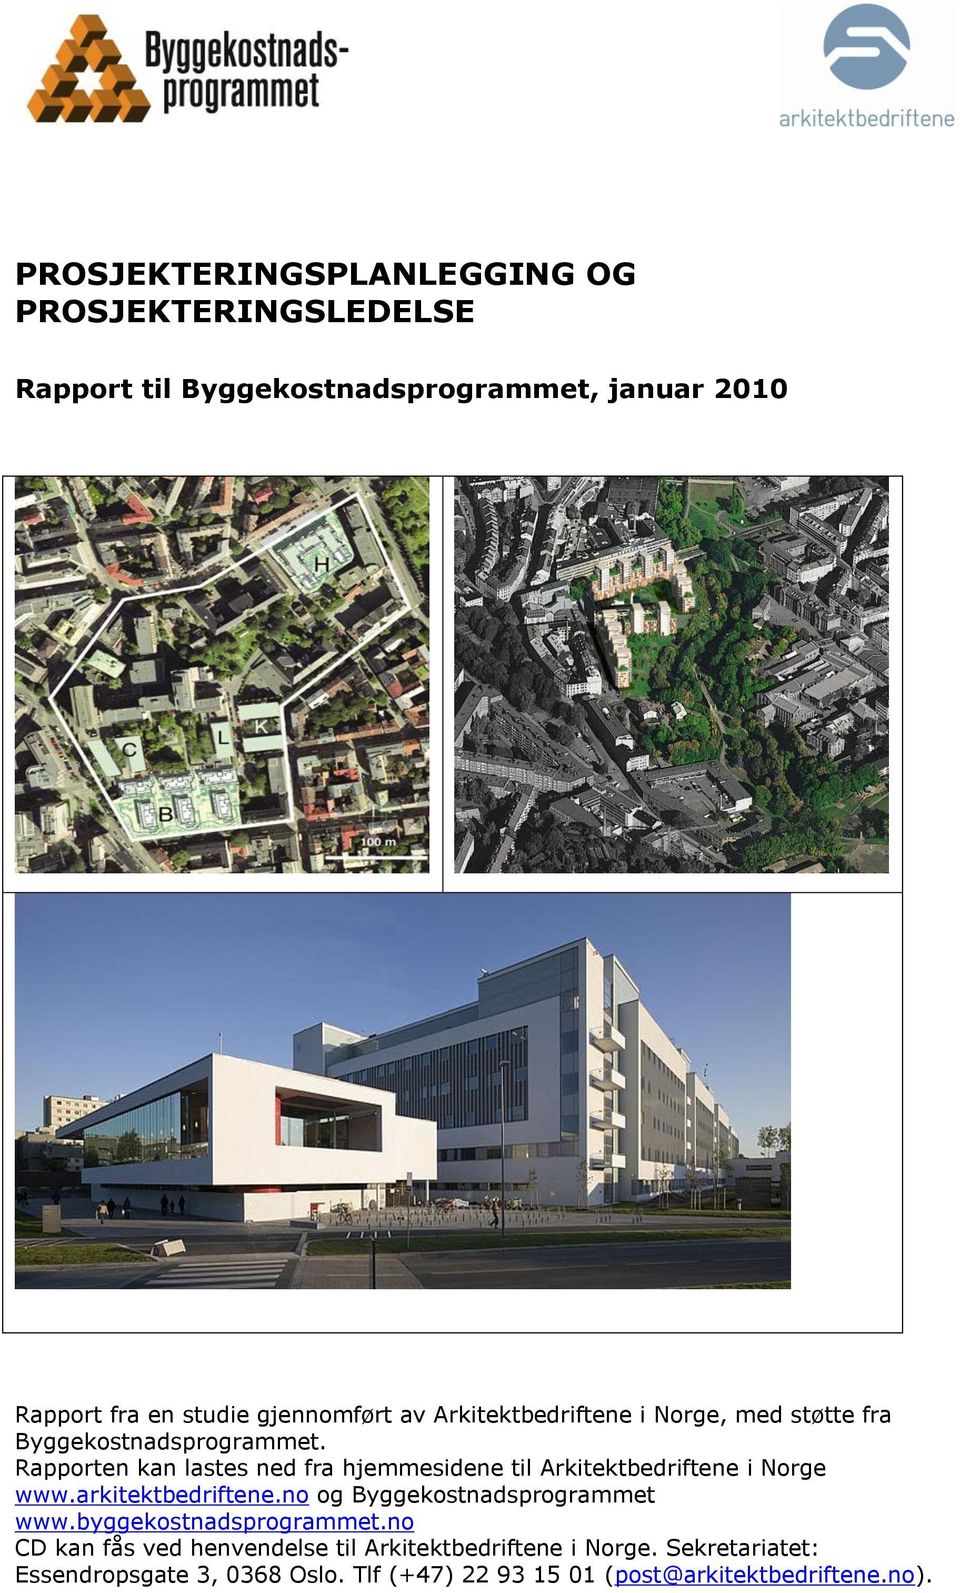 Rapporten kan lastes ned fra hjemmesidene til Arkitektbedriftene i Norge www.arkitektbedriftene.